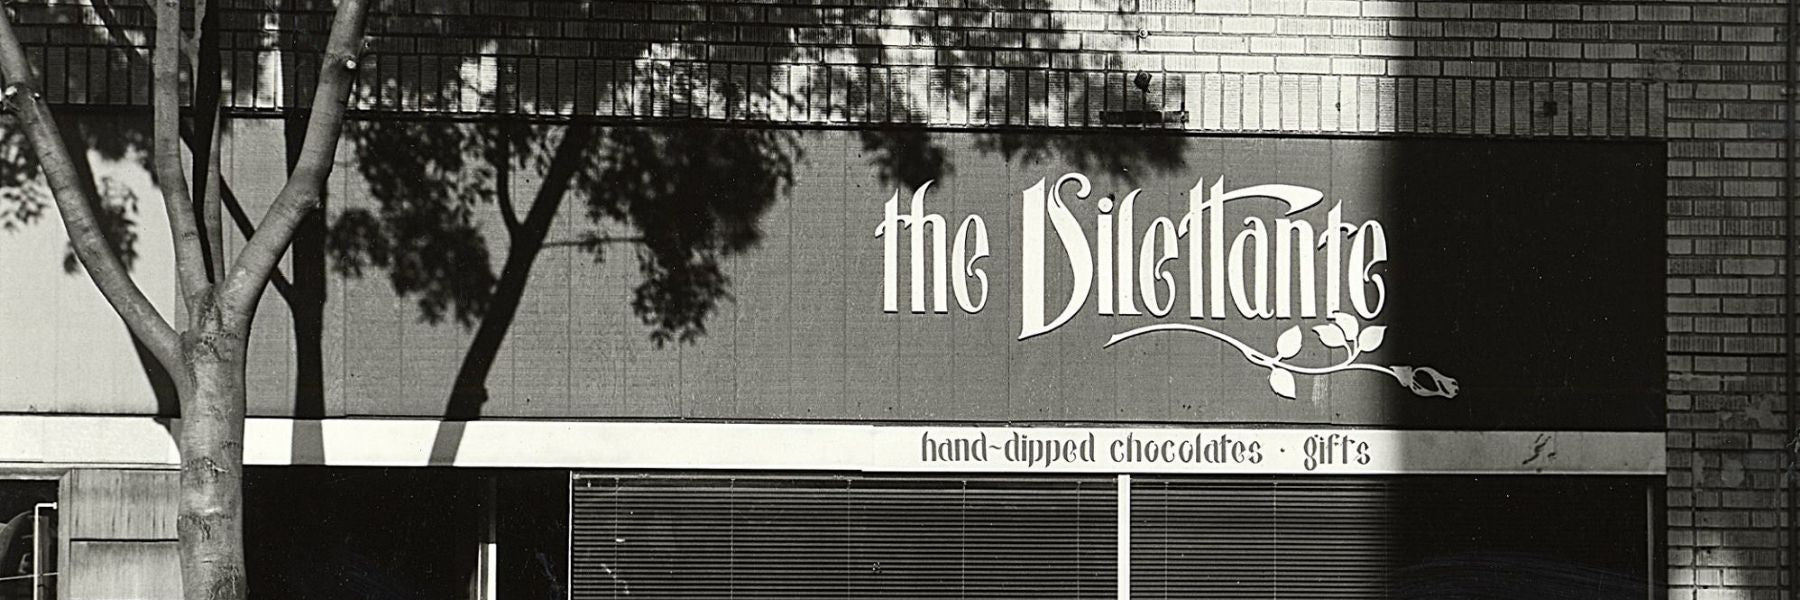 Dilettante Chocolates Original Location in 1976